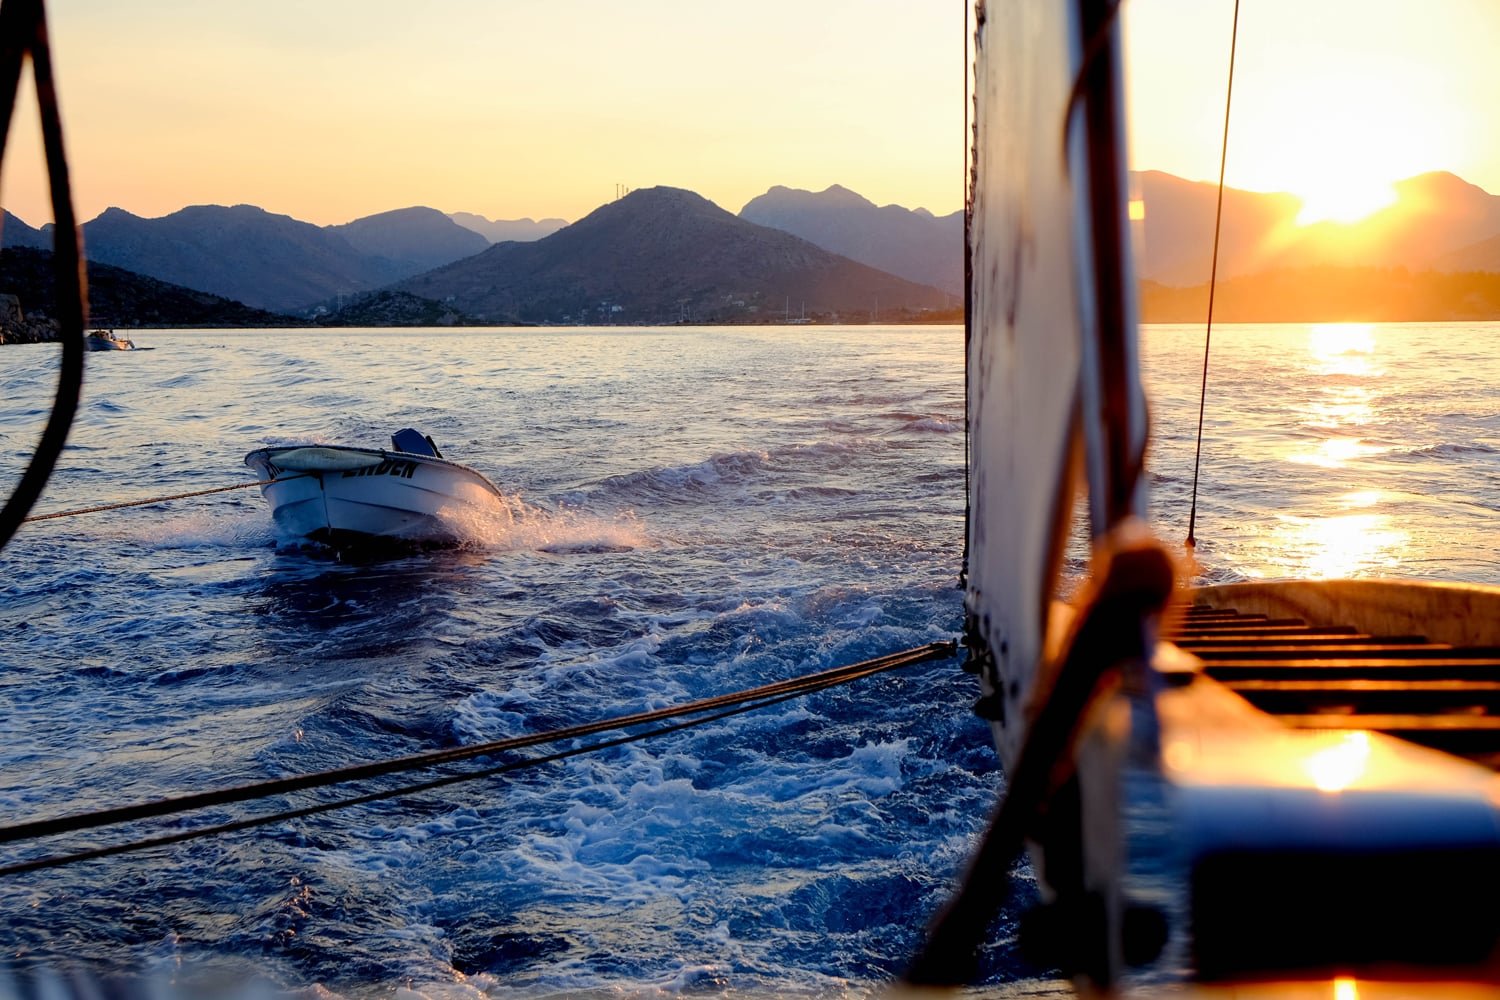  La Crociera Blu   Vieni a scoprire con noi l'antico fascino della  Costa Turchese . Noleggia una barca privata ed esplora gli angoli più&nbsp;nascosti dei mari dell' Egeo  e del  Mediterraneo .       Inizia il tuo viaggio  